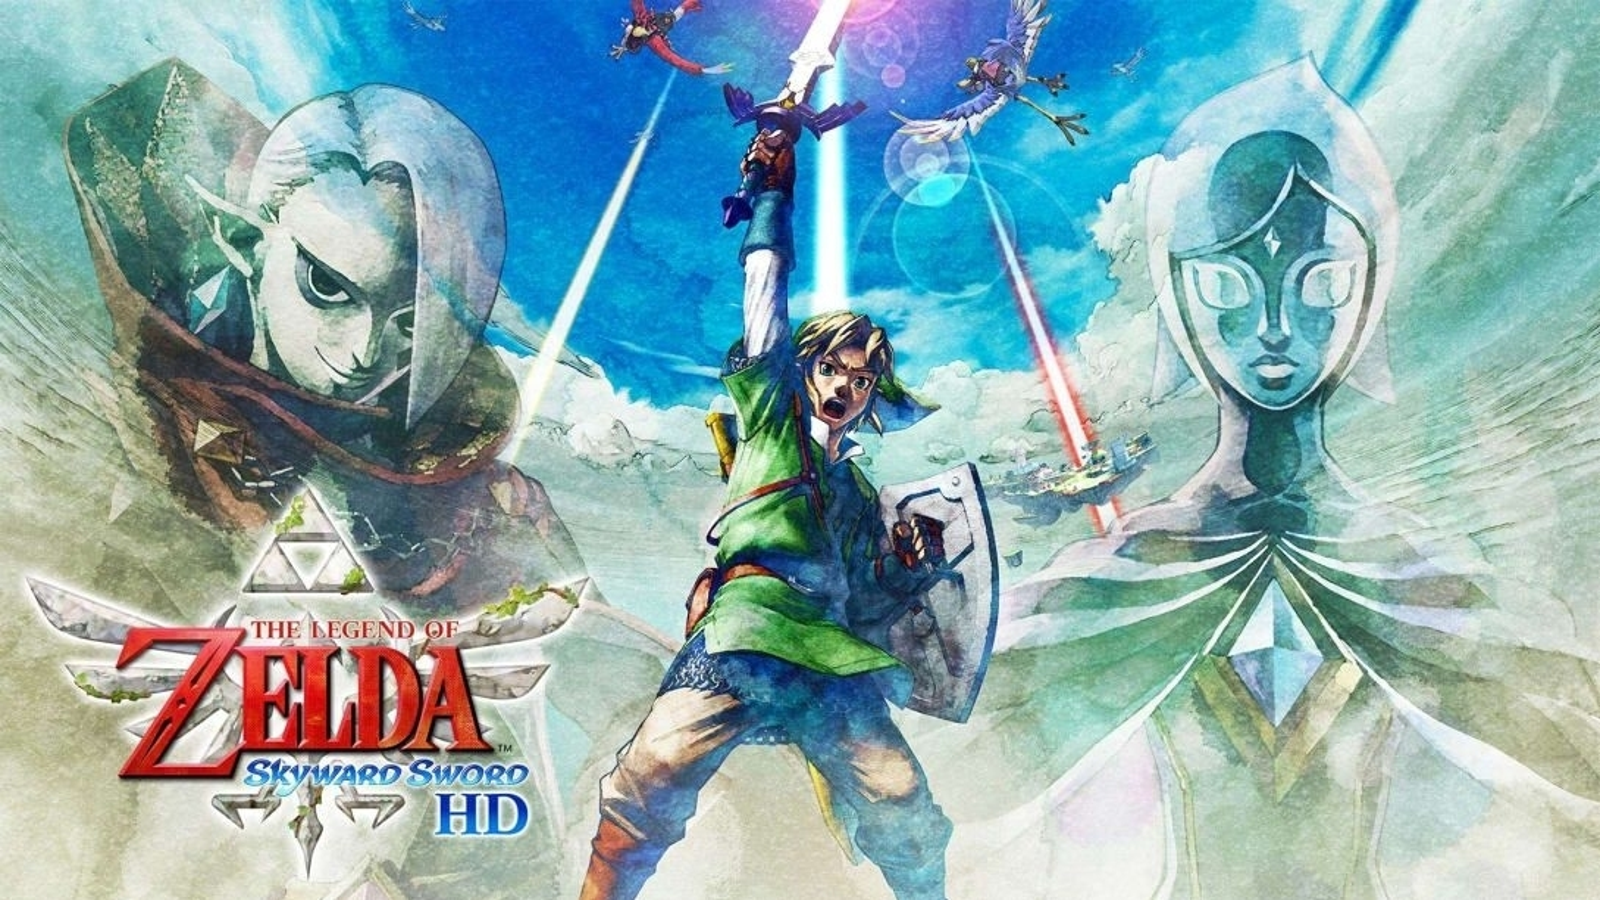 The Great Tree - Faron Woods, Take Two! - Walkthrough, The Legend of  Zelda: Skyward Sword HD